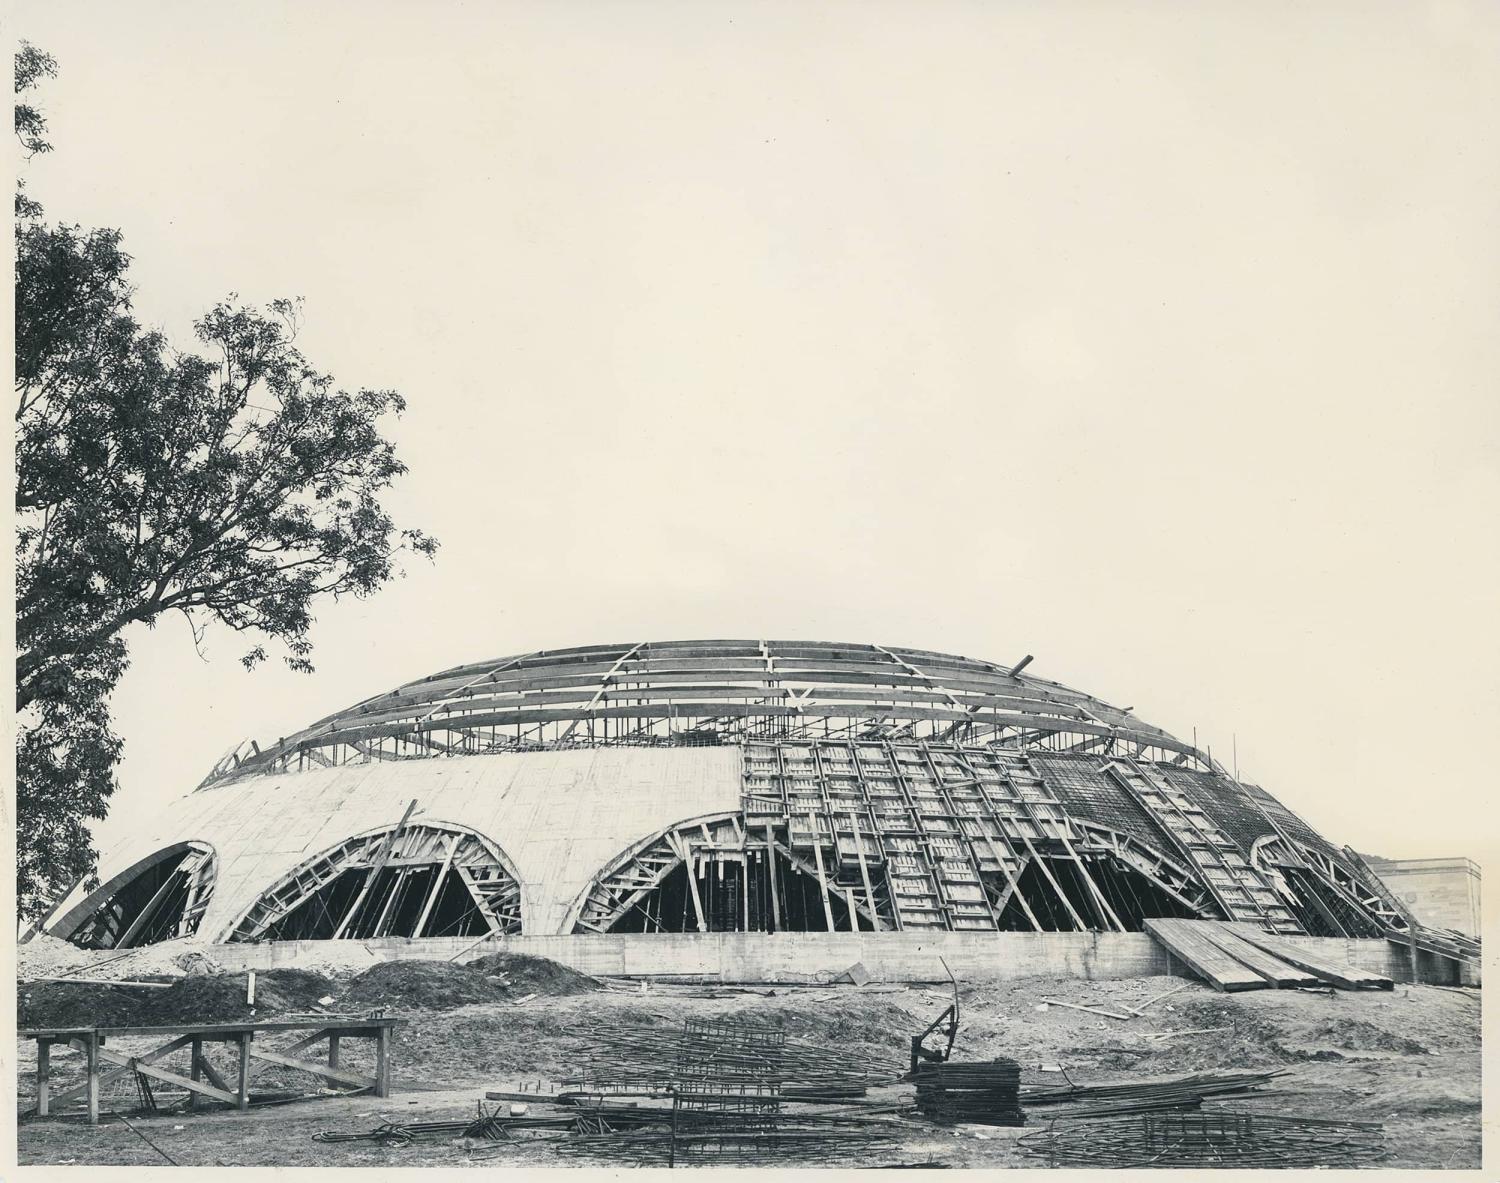 The Shine Dome architecture 